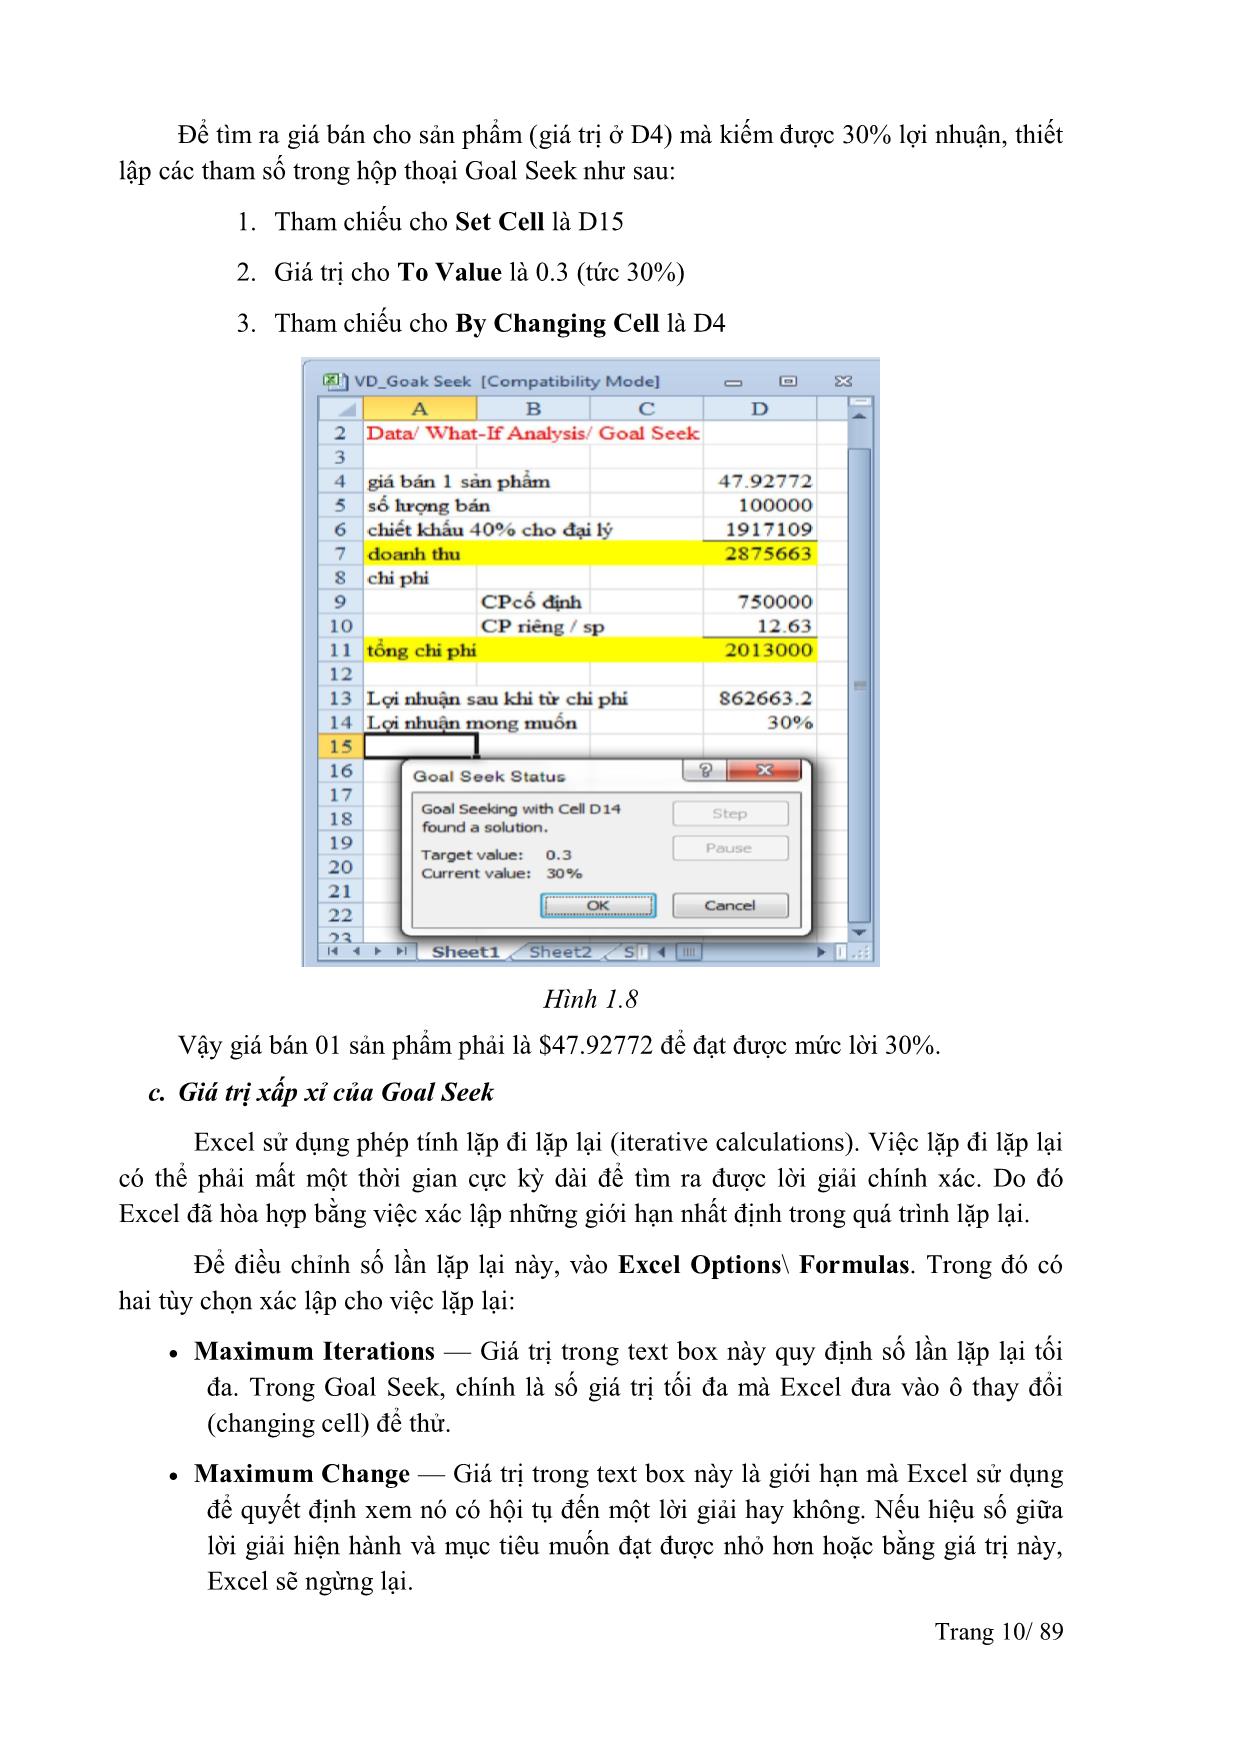 Giáo trình Excel nâng cao trang 10